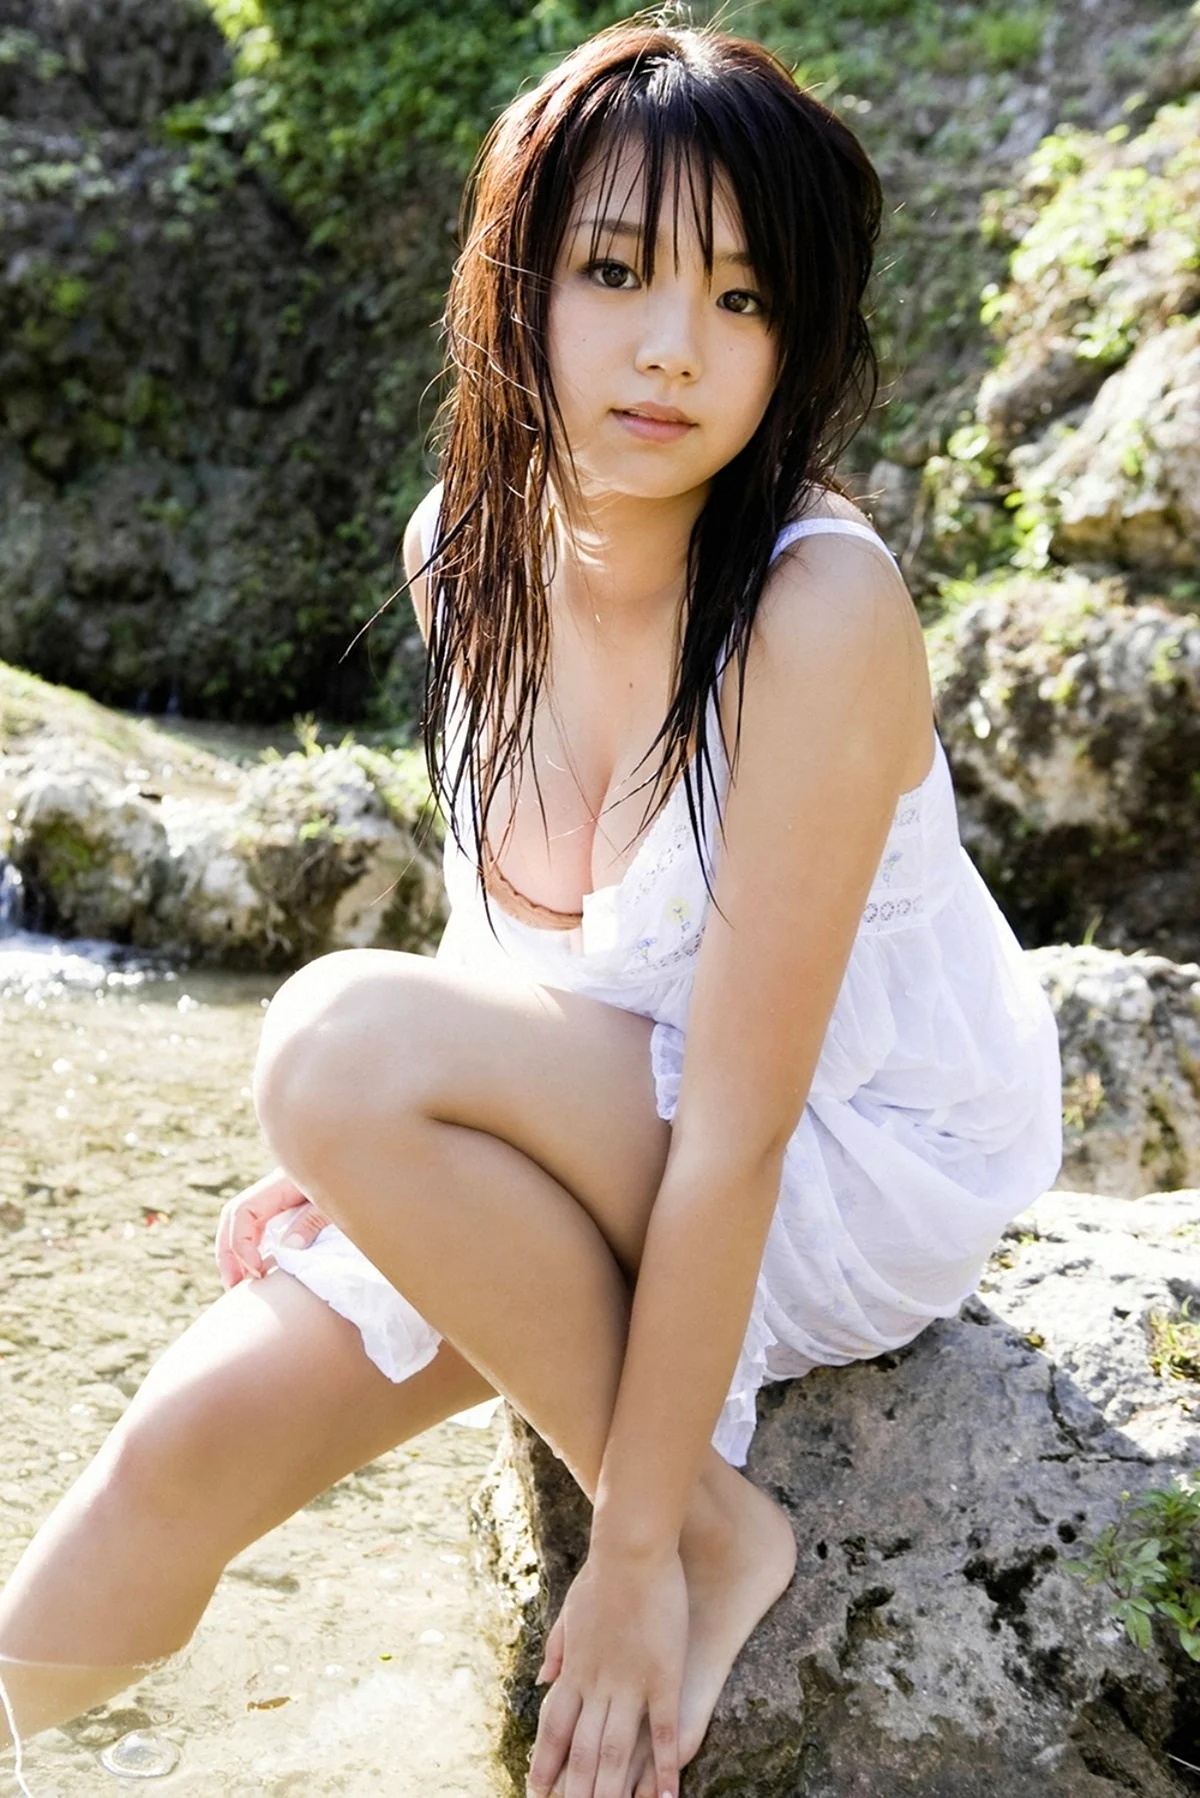 Японская модель АИ Шинозаки. Красивая девушка